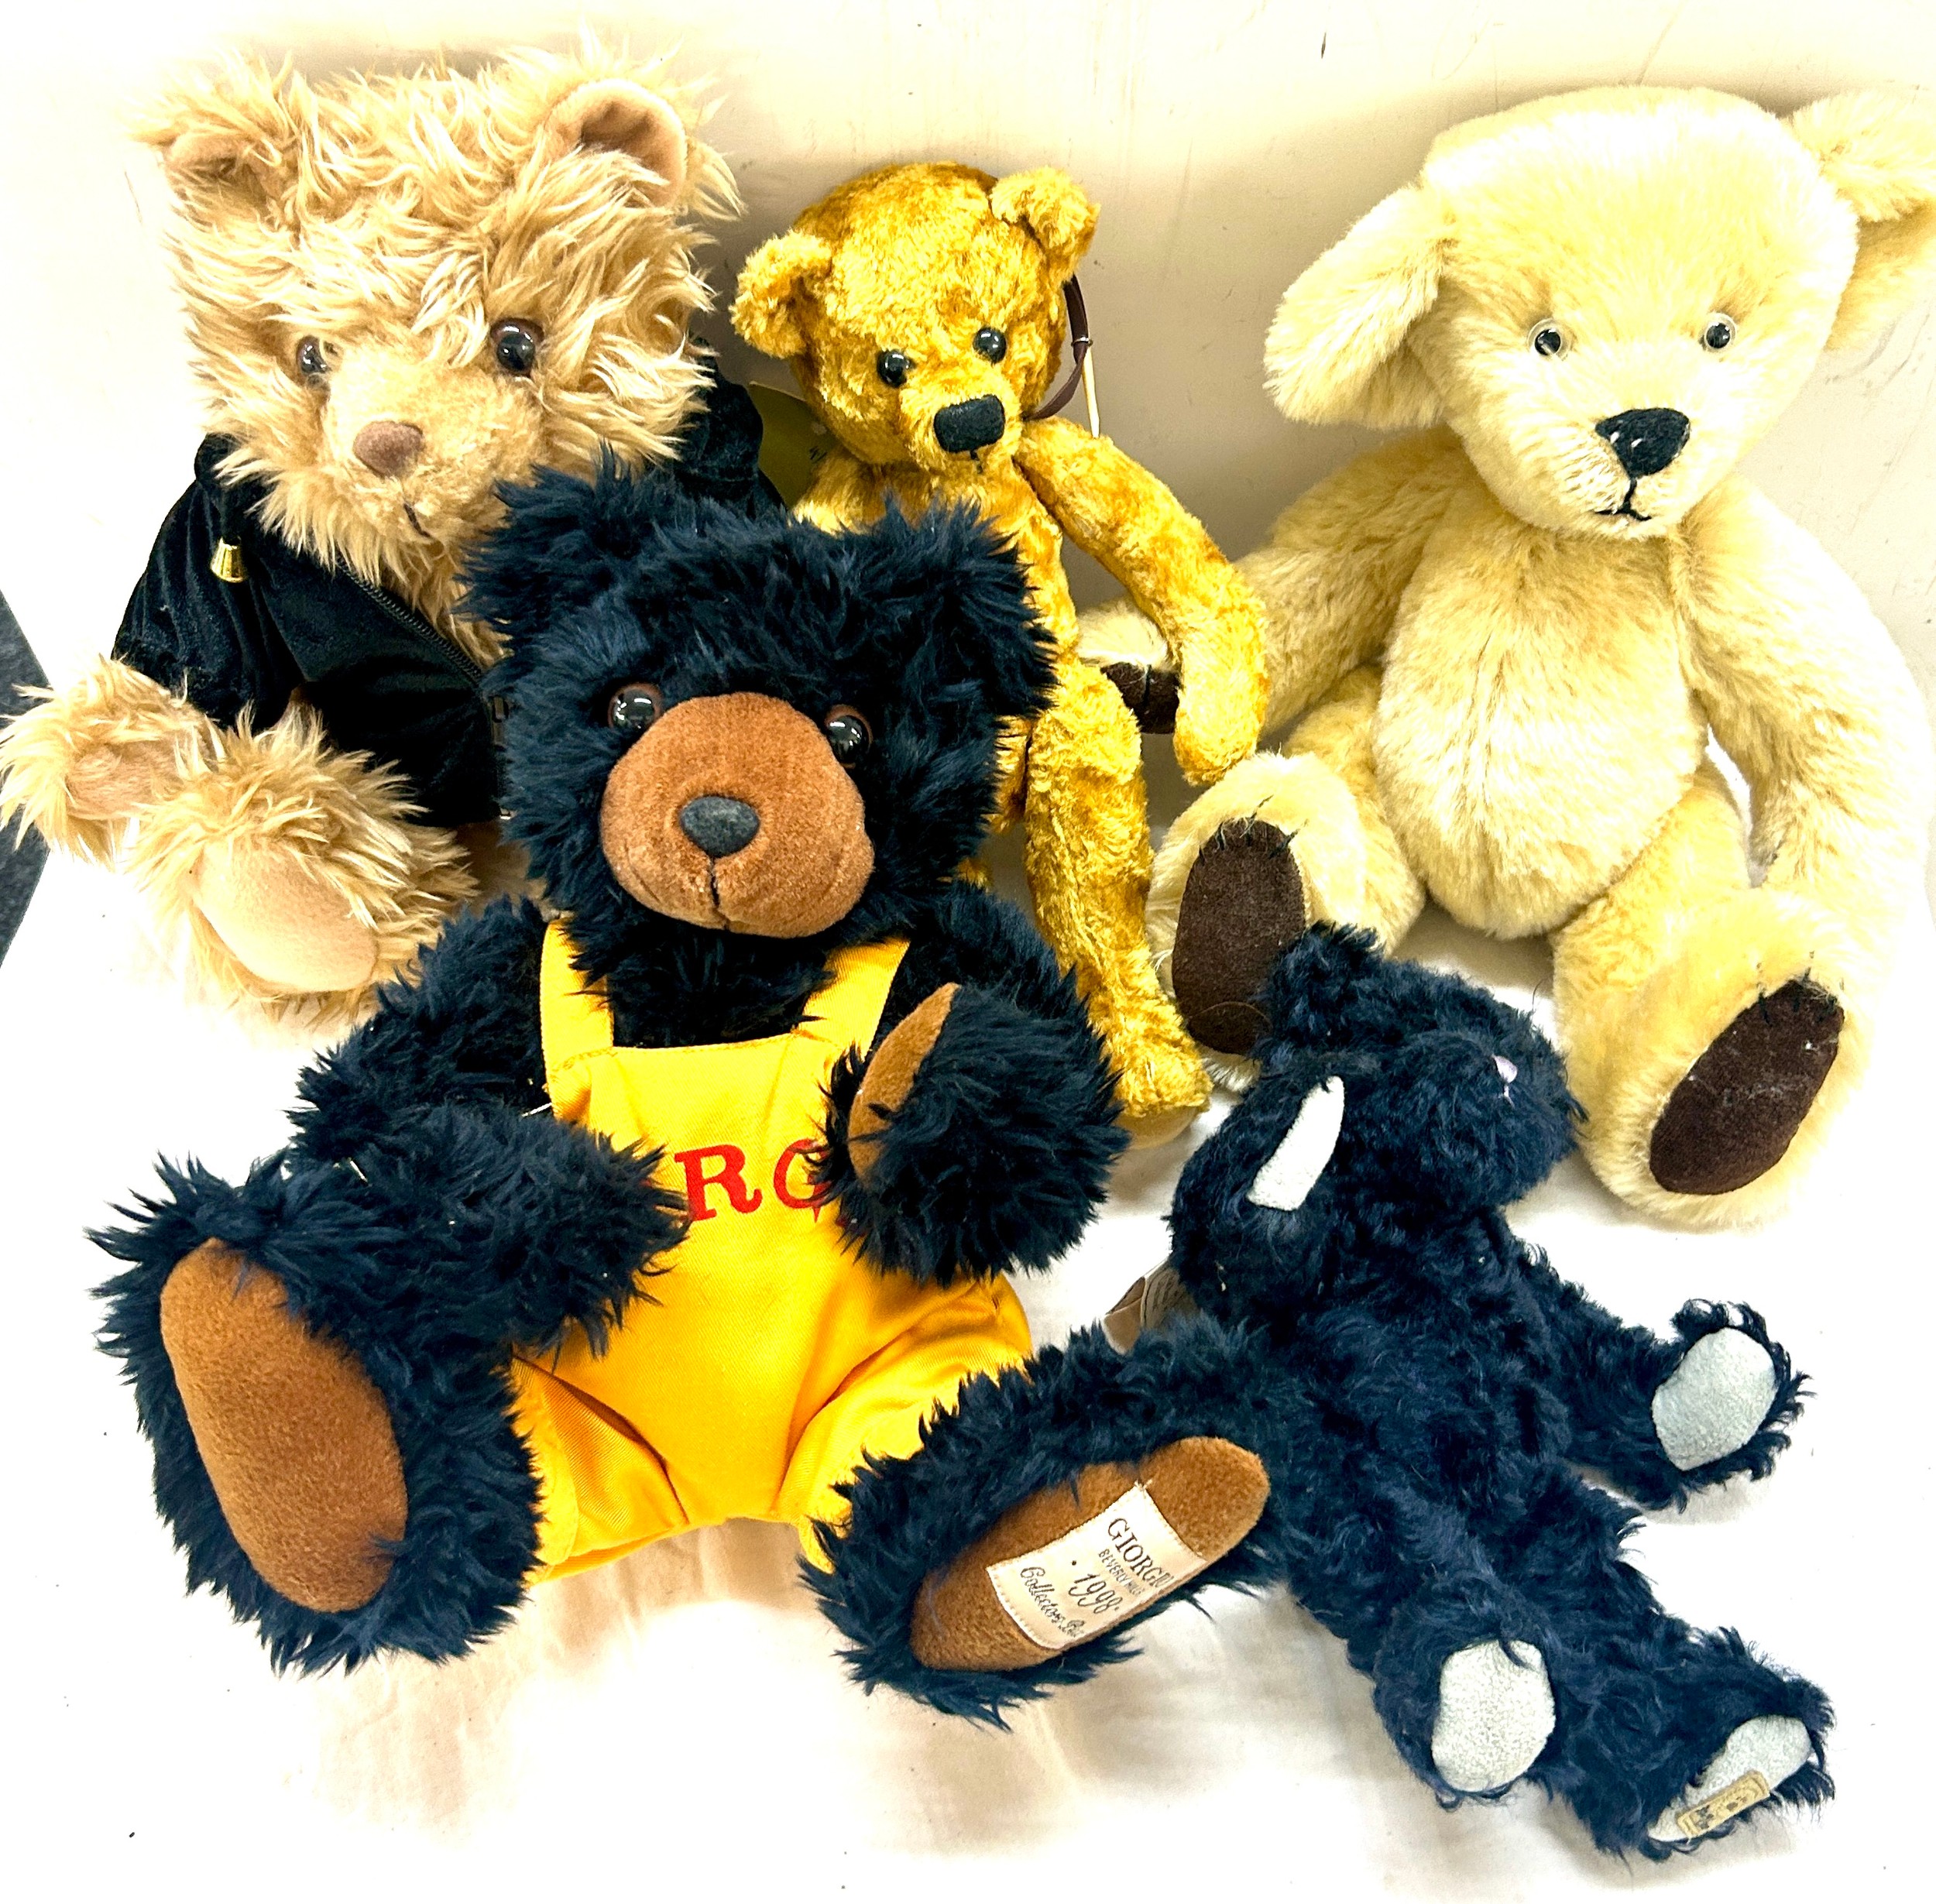 Giorgio Beverley hills 1998, 2002 bear, Boyds small teddy, Tea bag by Gruff bear company, Teddies